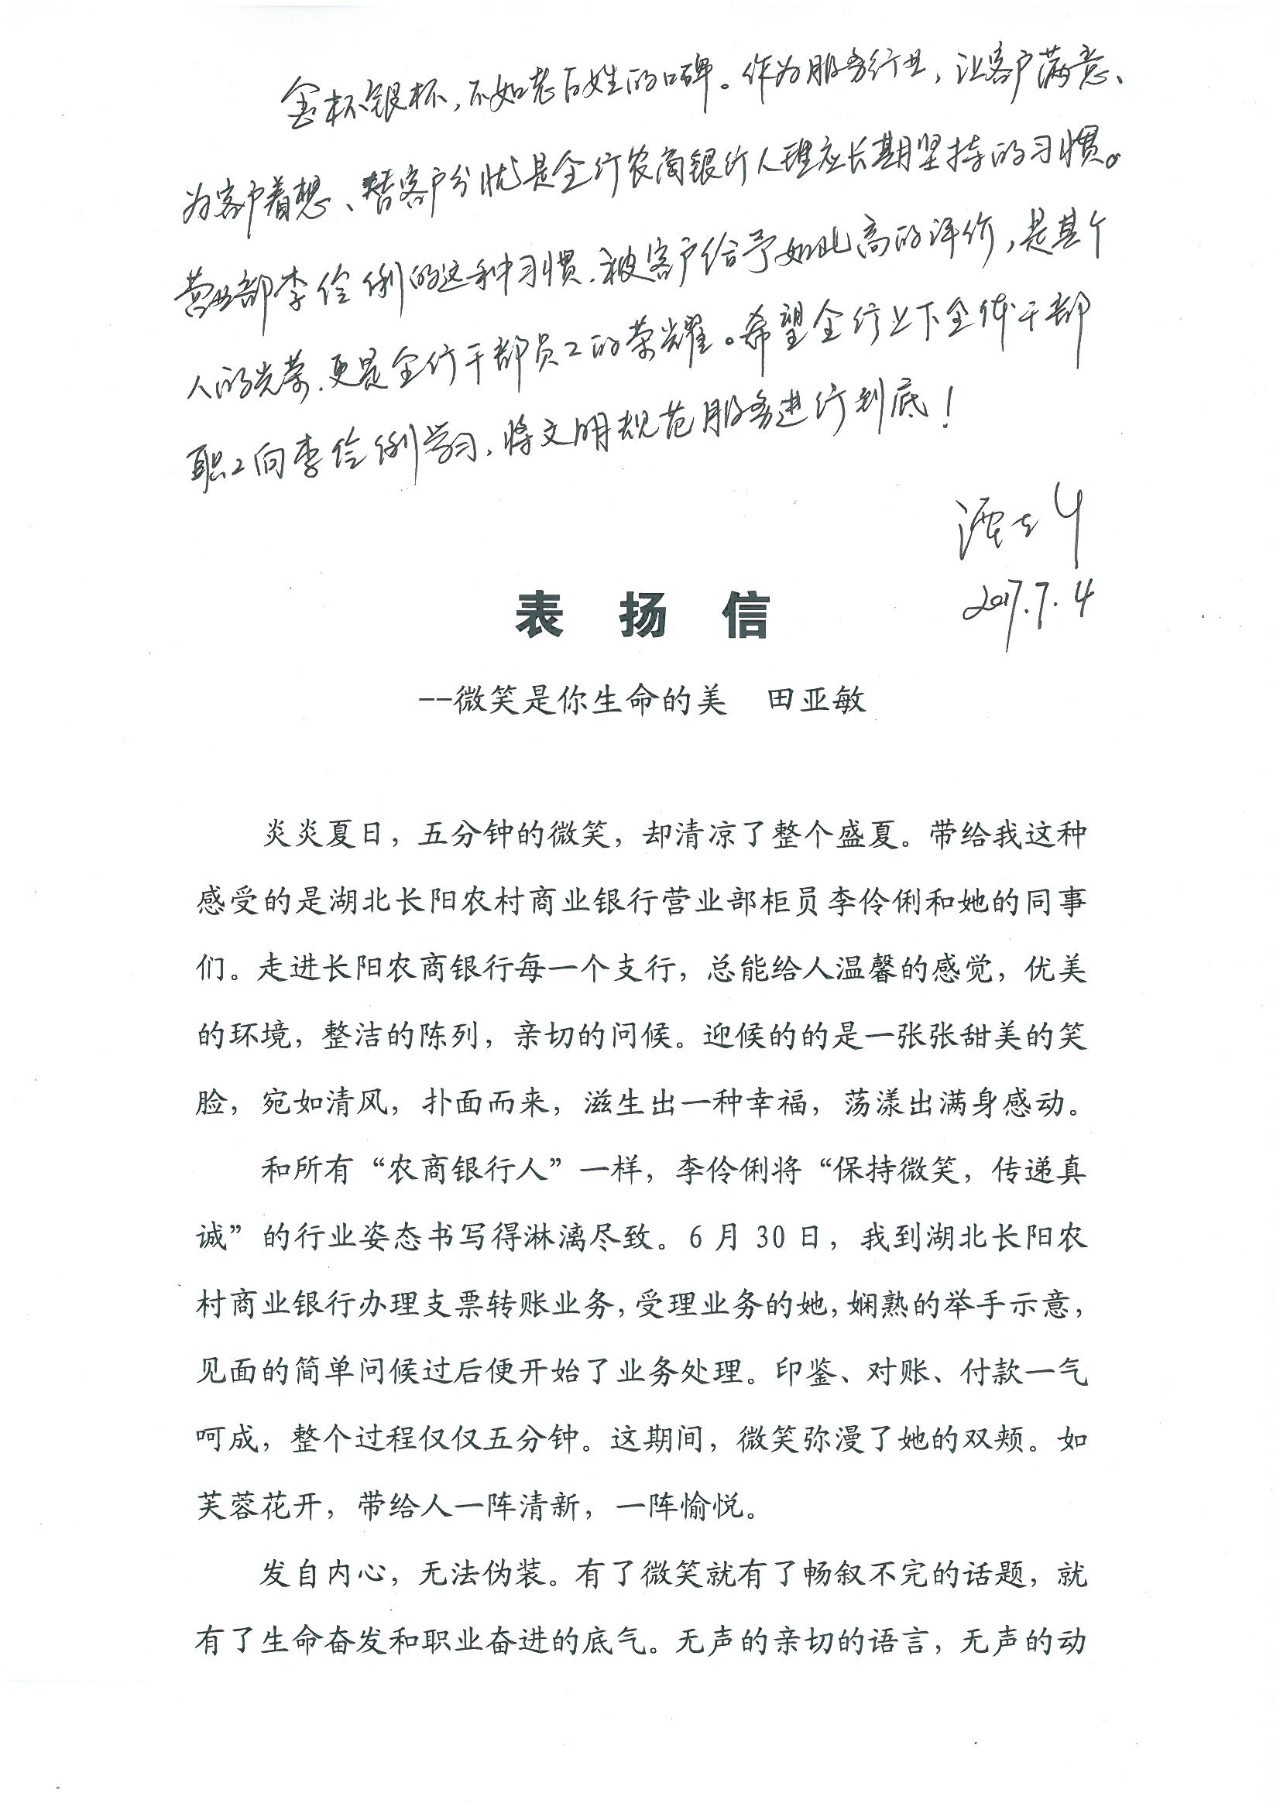 【今日农商】客户写给长阳农商银行营业部员工李伶俐的表扬信